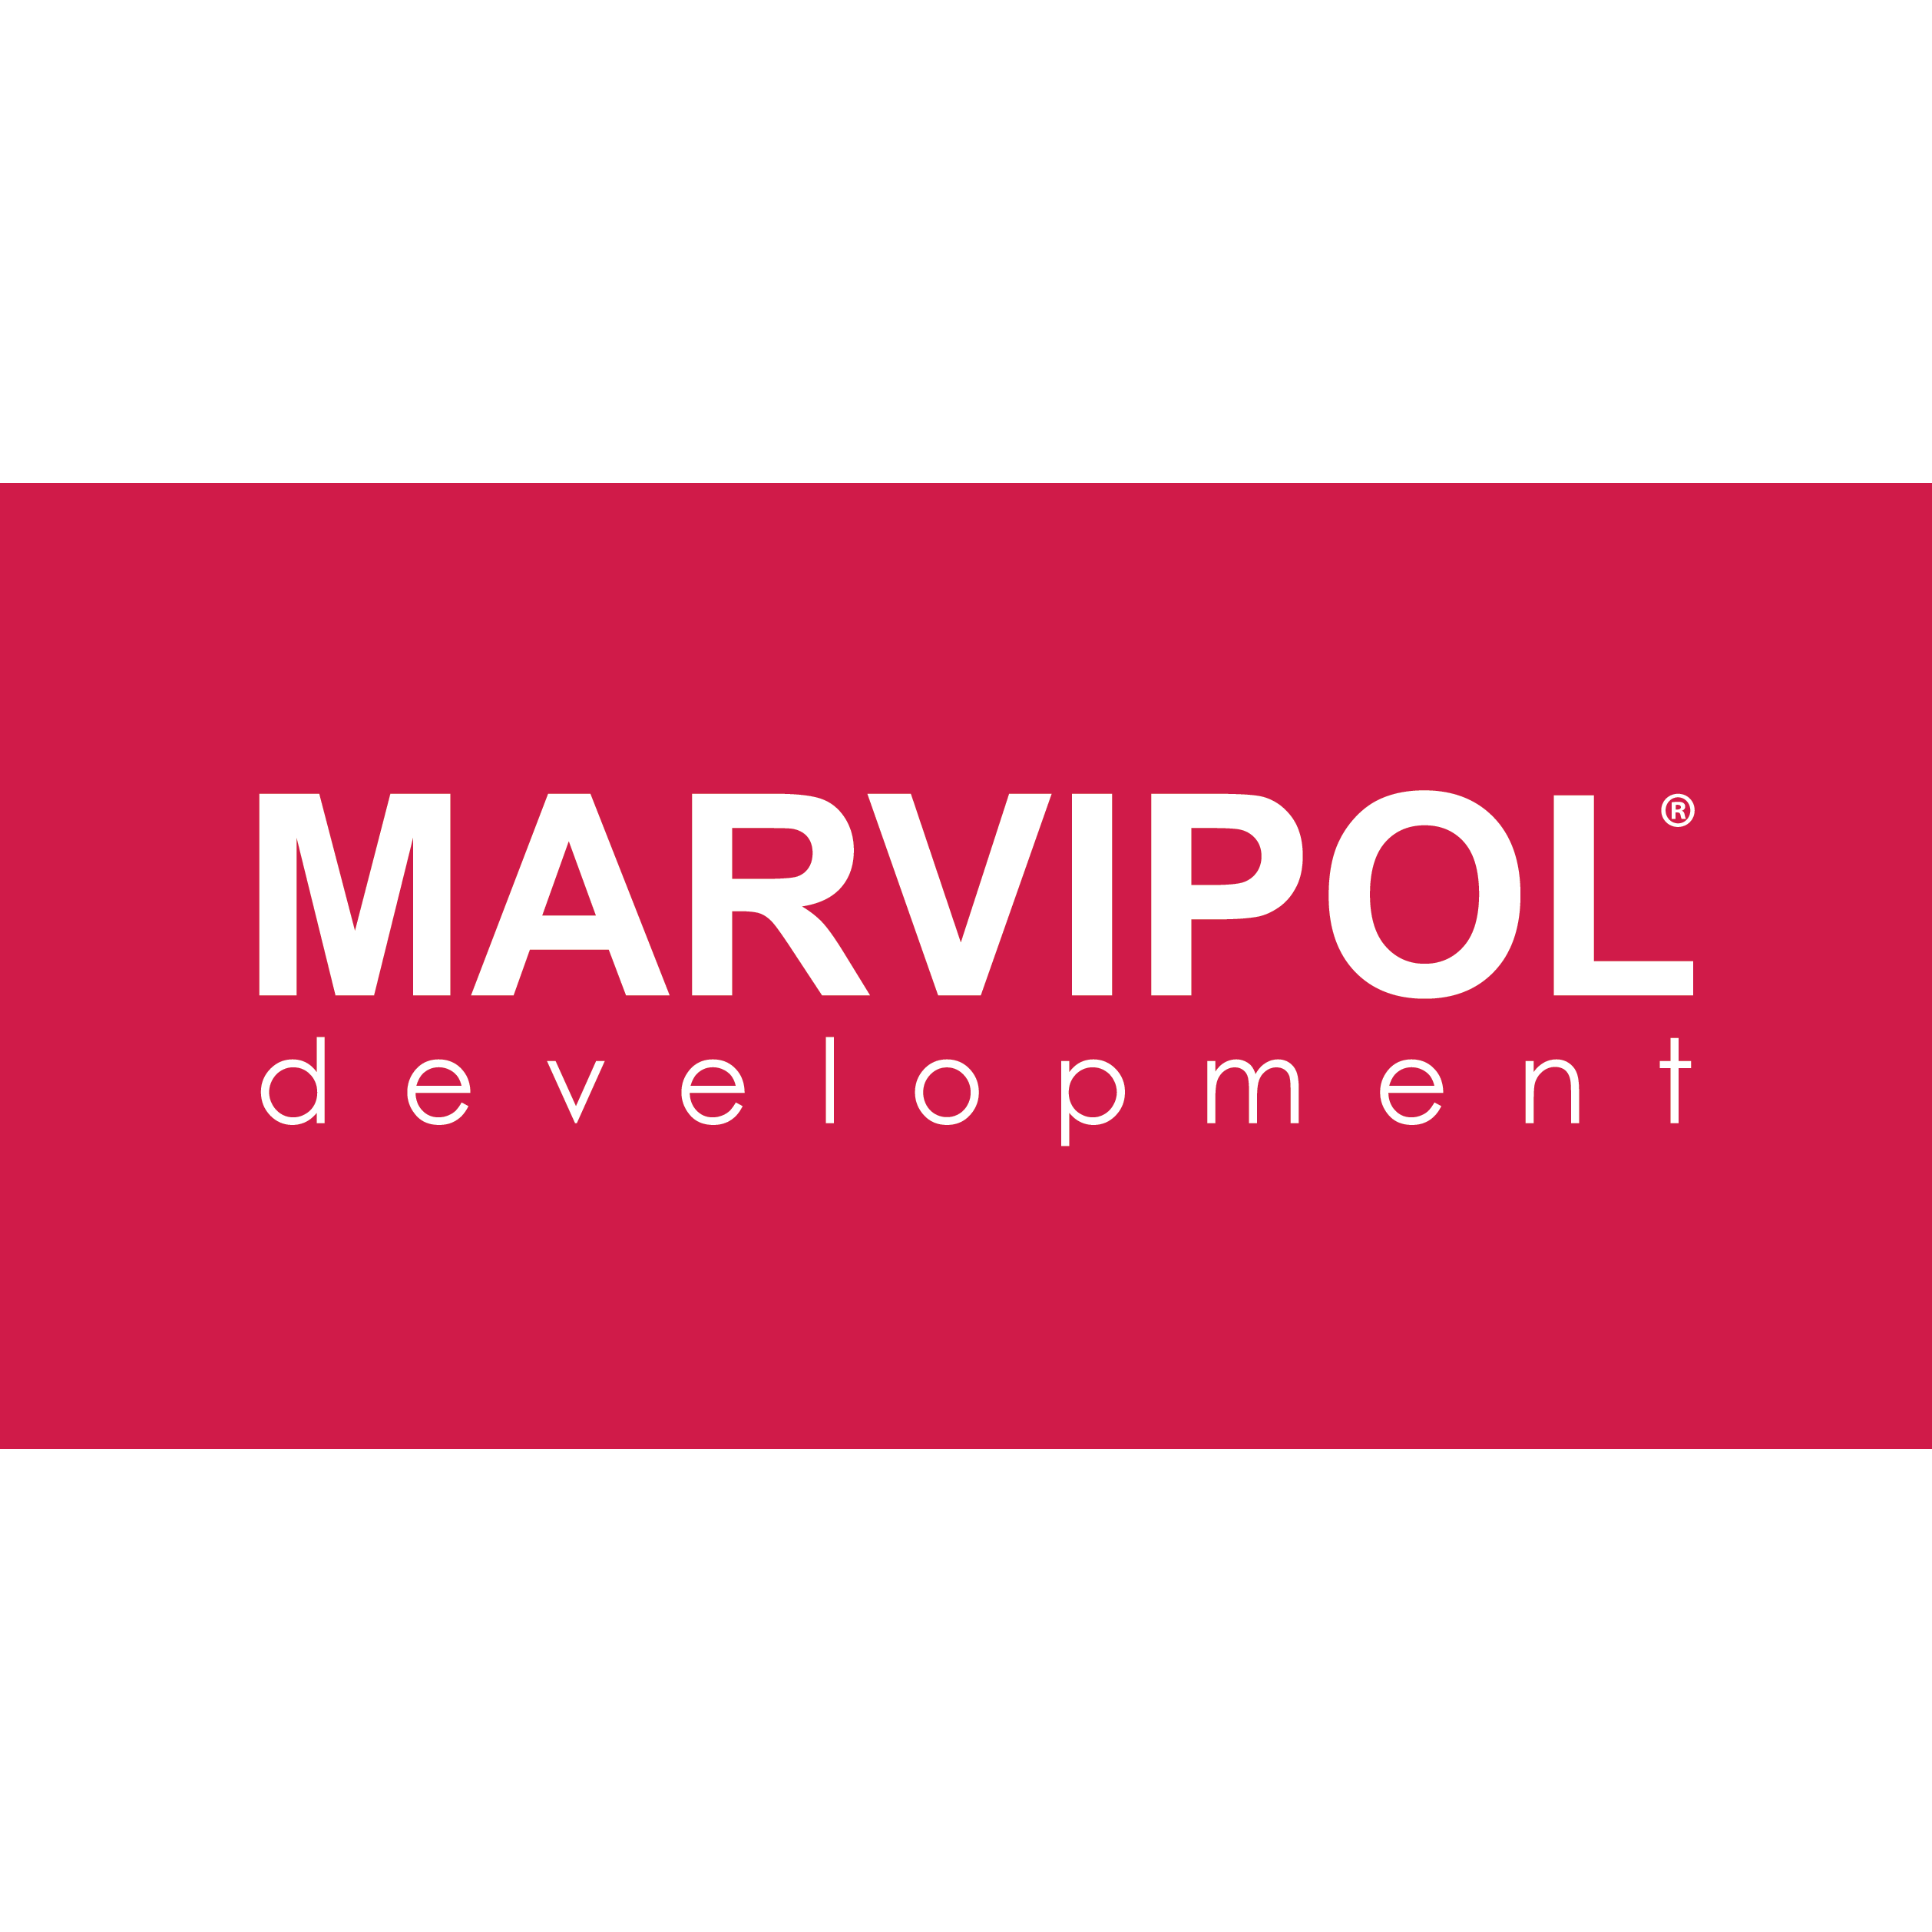 Marvipol